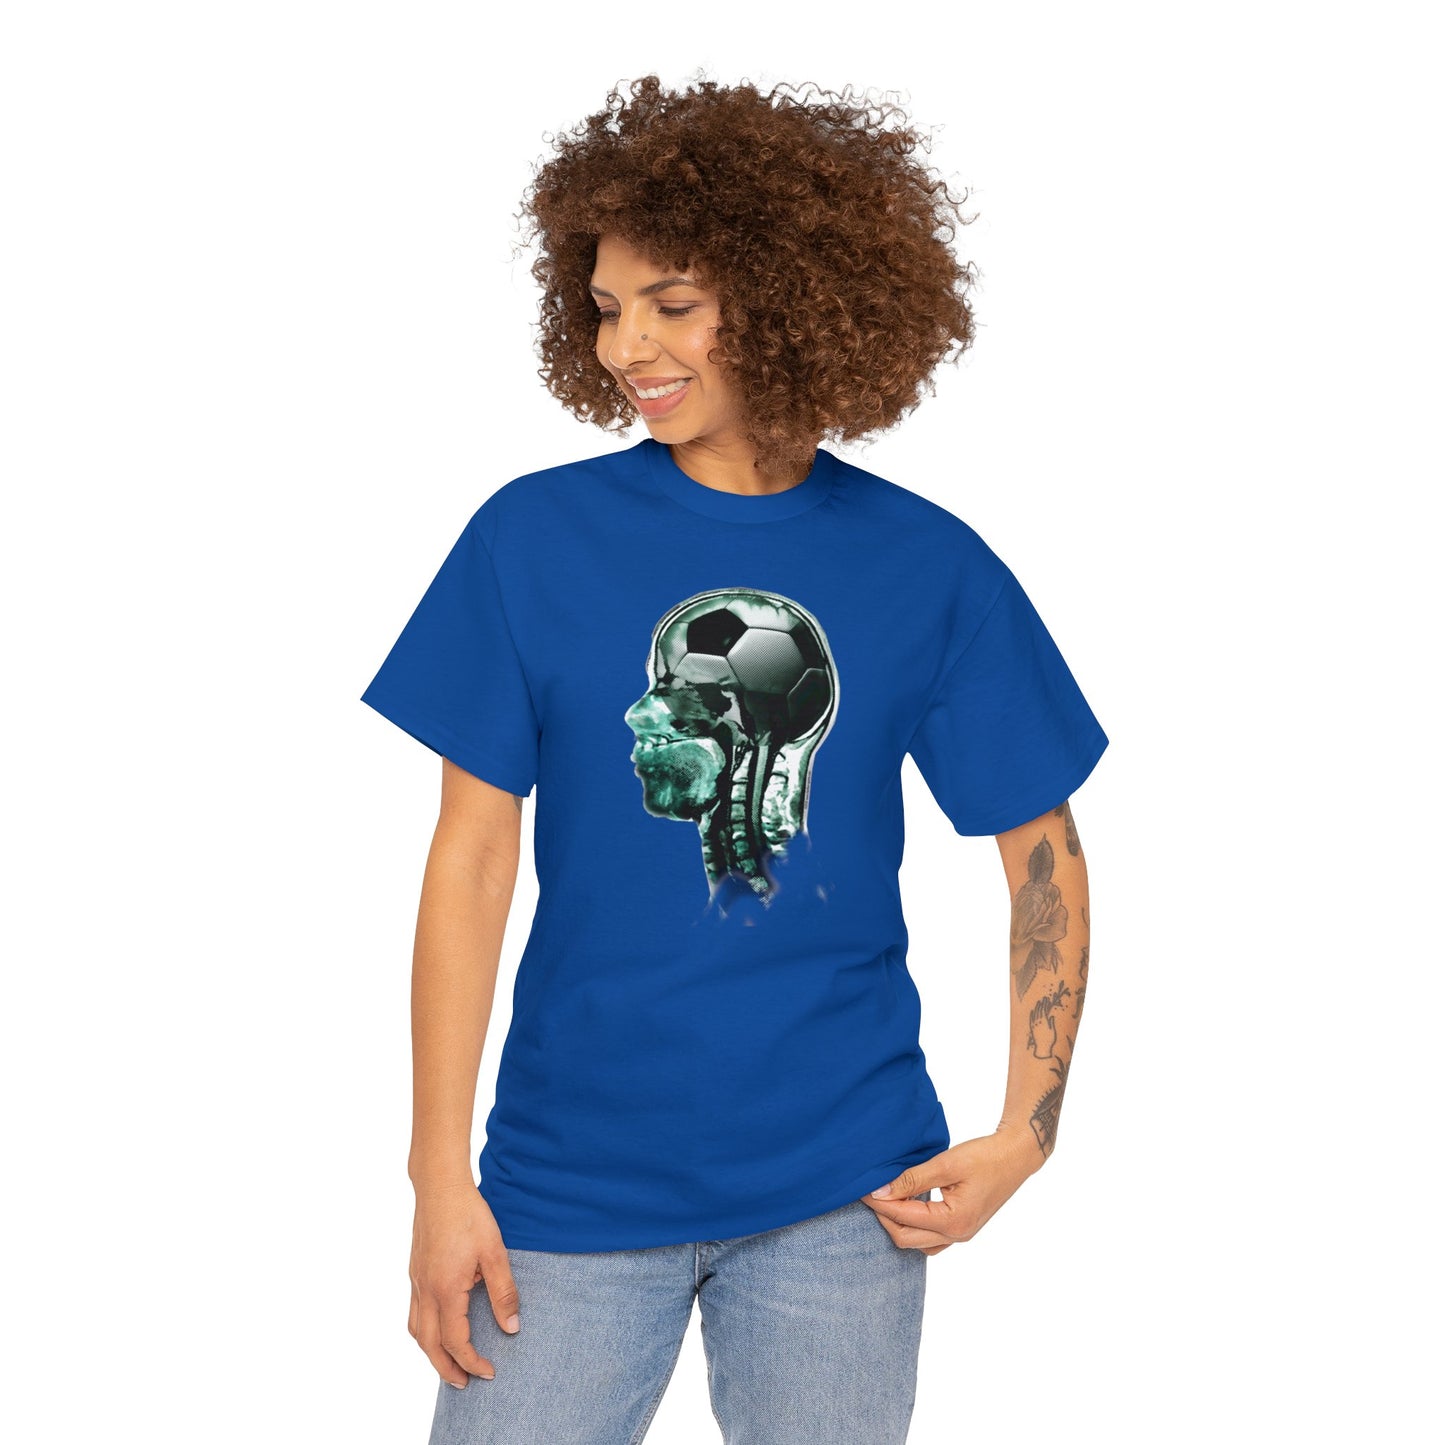 X-Ray Soccer, Brain t-shirt, Soccer Brain, Soccer Shirt, Soccer on the brain, Funny Soccer Shirt Gifts For Soccer Lover on your List